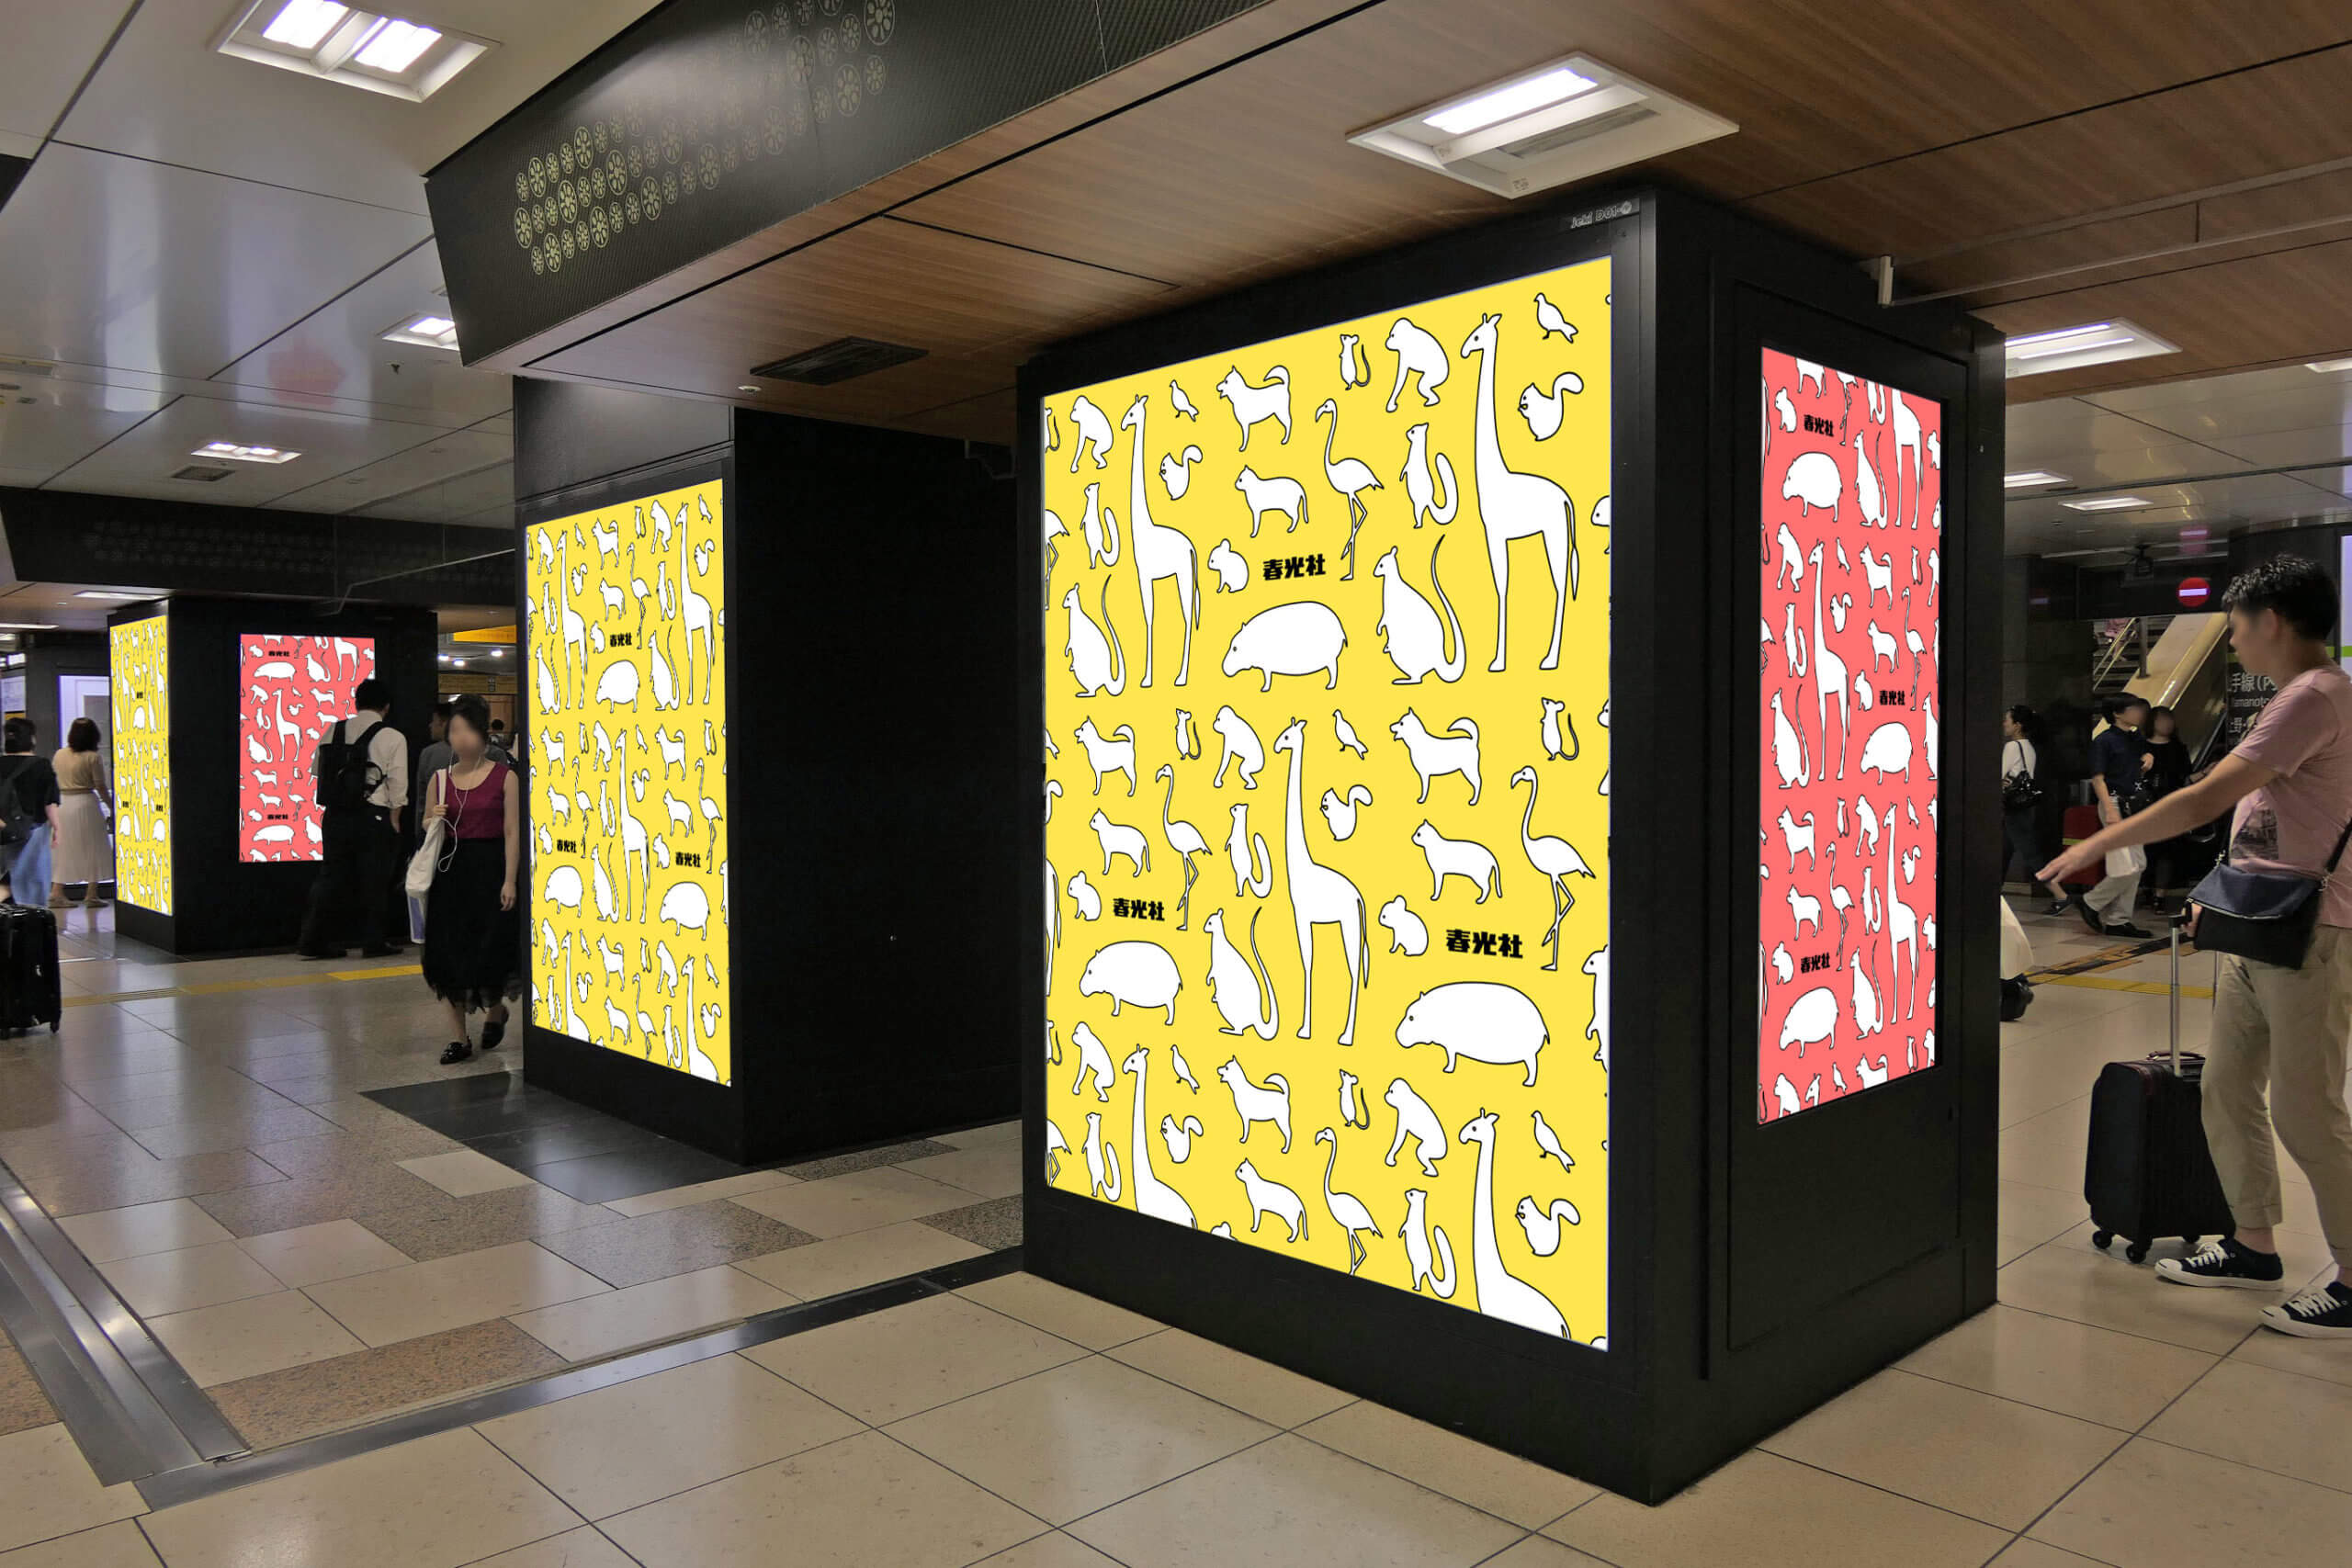 JR東日本東京駅中央通路に設置されている縦型デジタルサイネージとシート